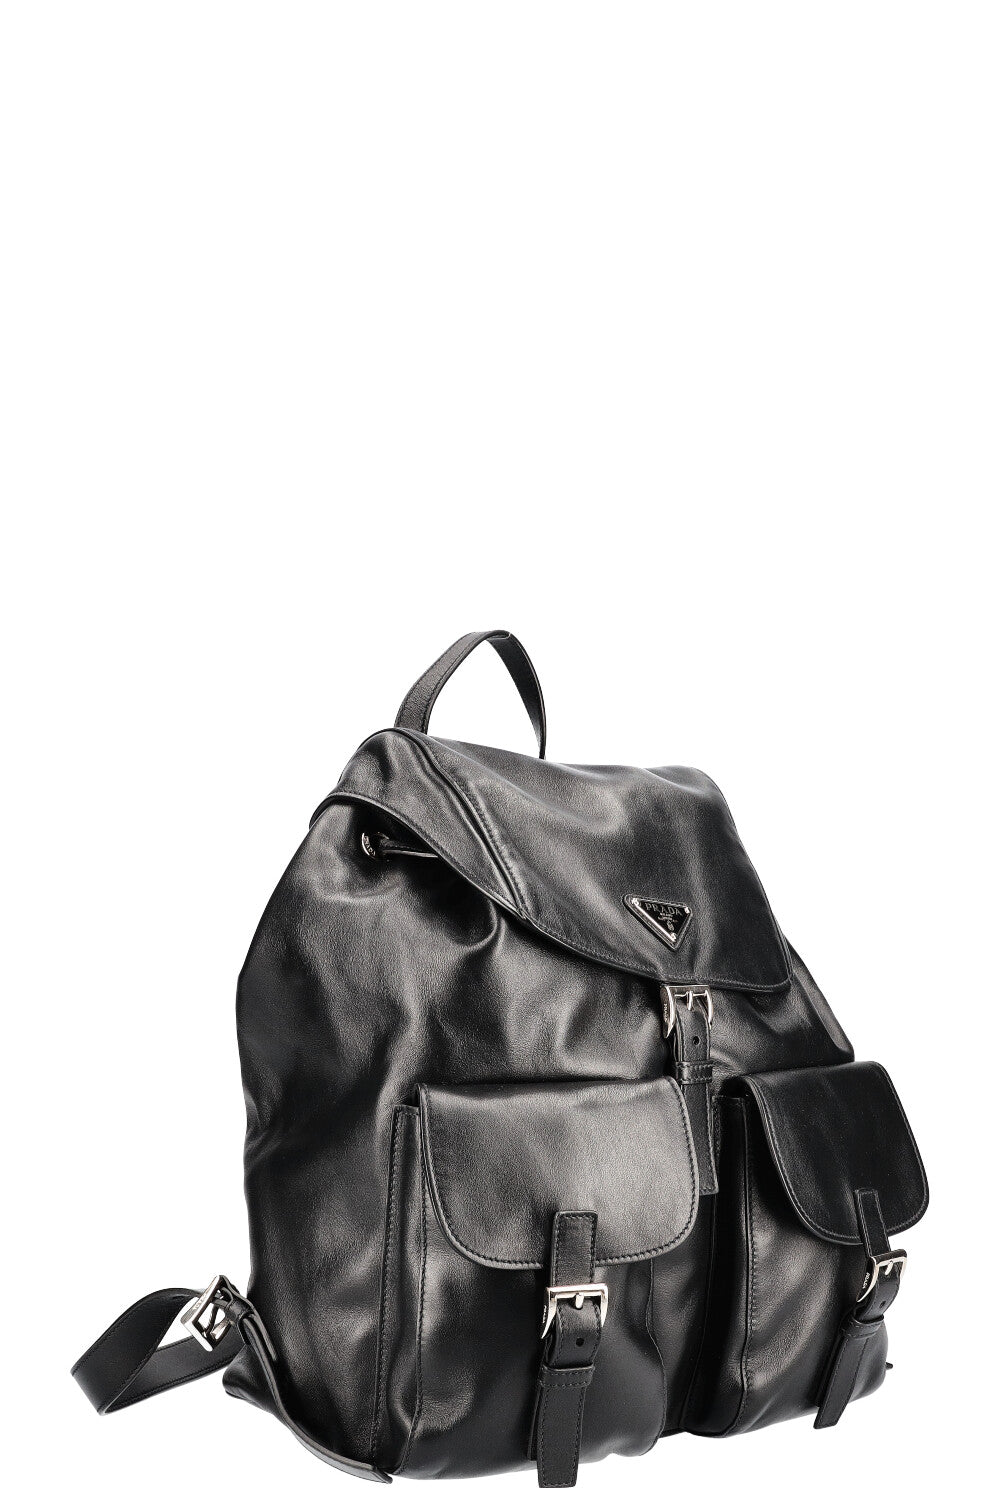 PRADA Backpack Leather Black